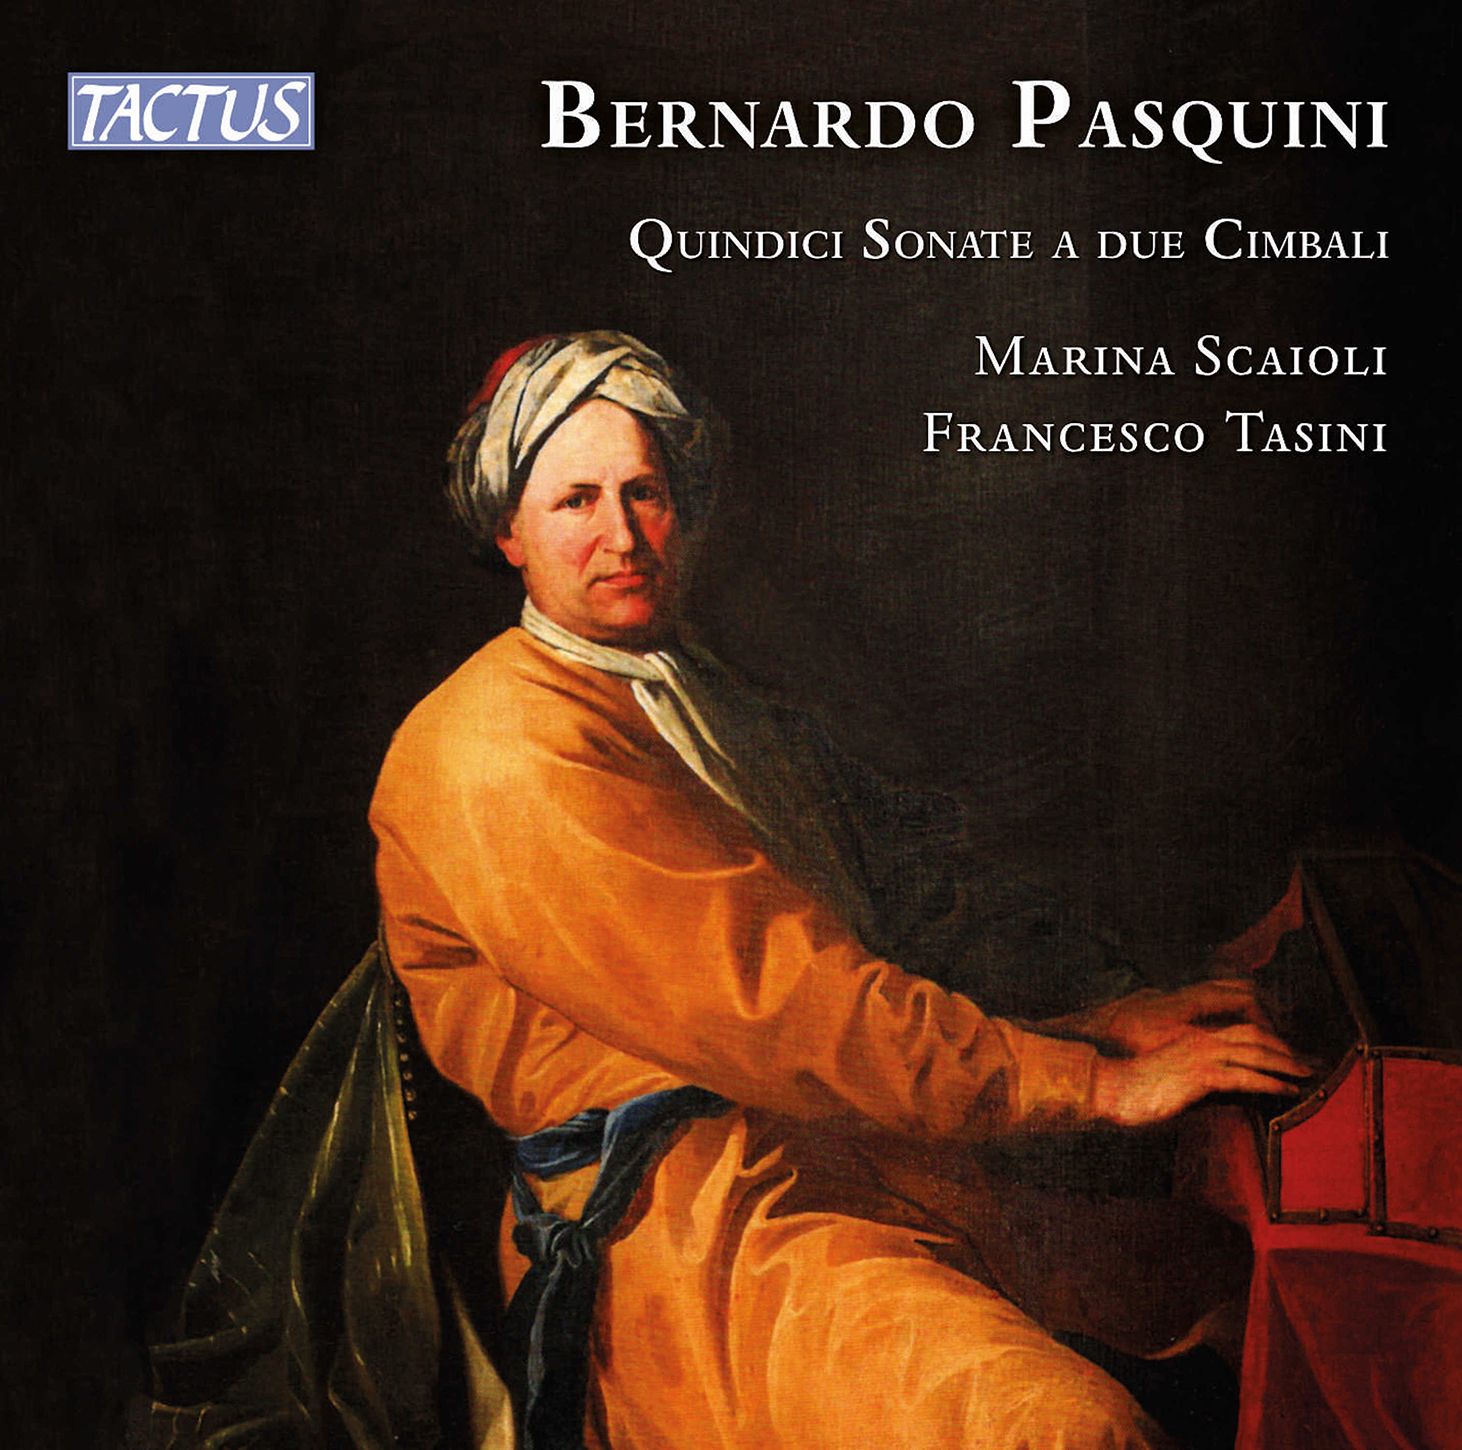 Discovering Bernardo Pasquini